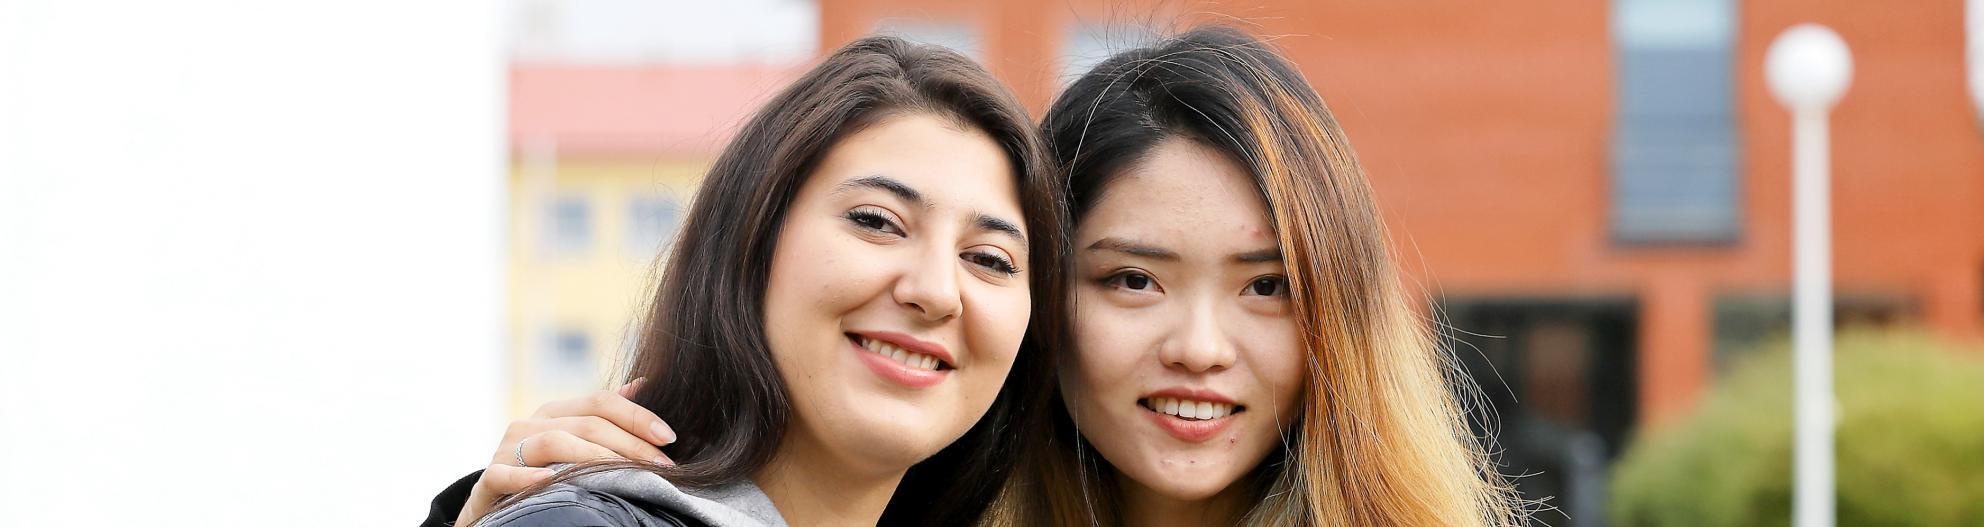 Kaksi opiskelijaa hymyilevät kameraan yliopiston kampuksella ulkona